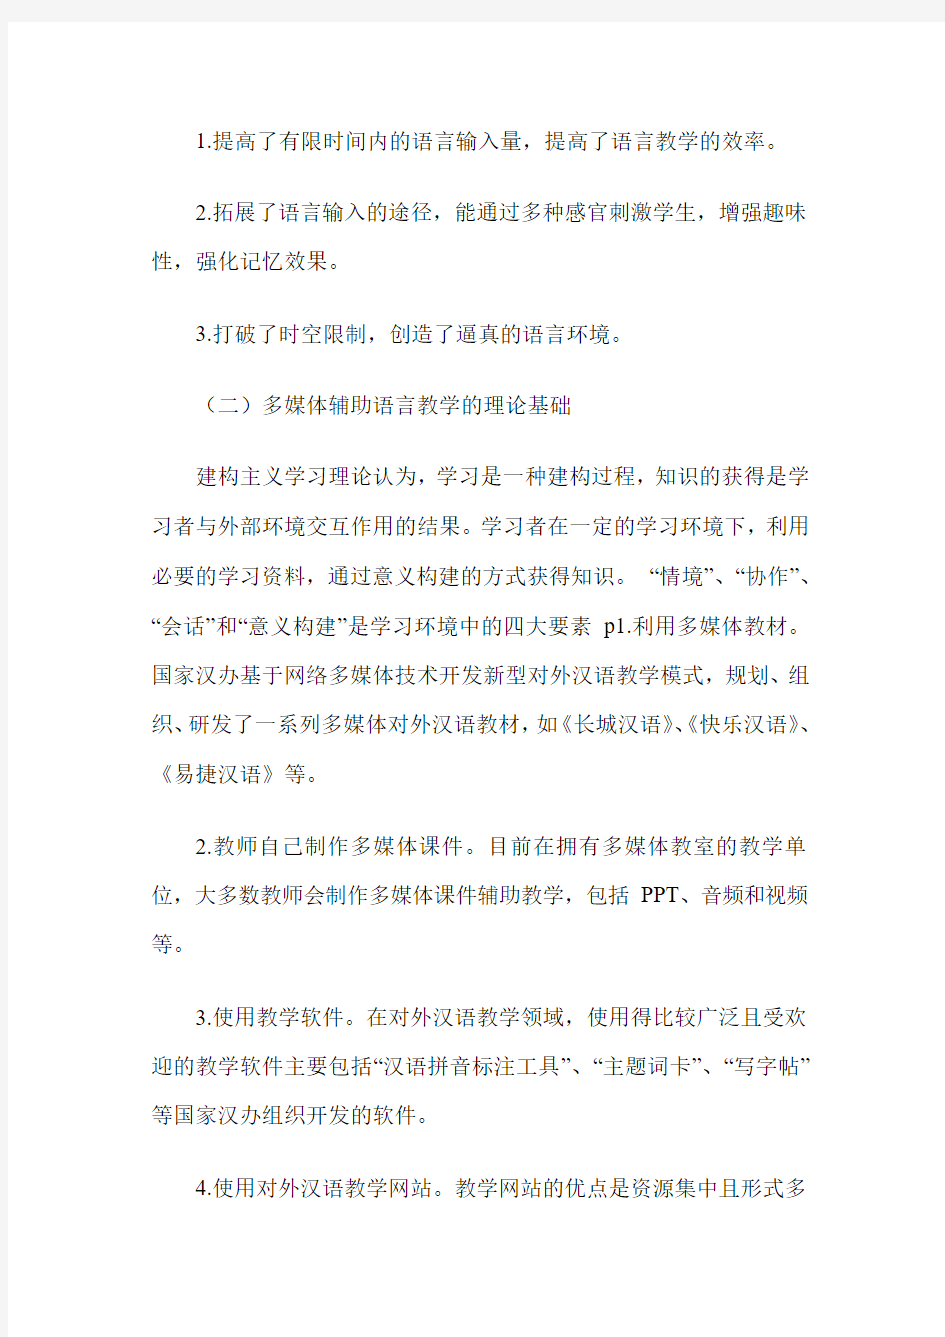 多媒体辅助对外汉语教学的实践研究——以“网络孔子学院”为例